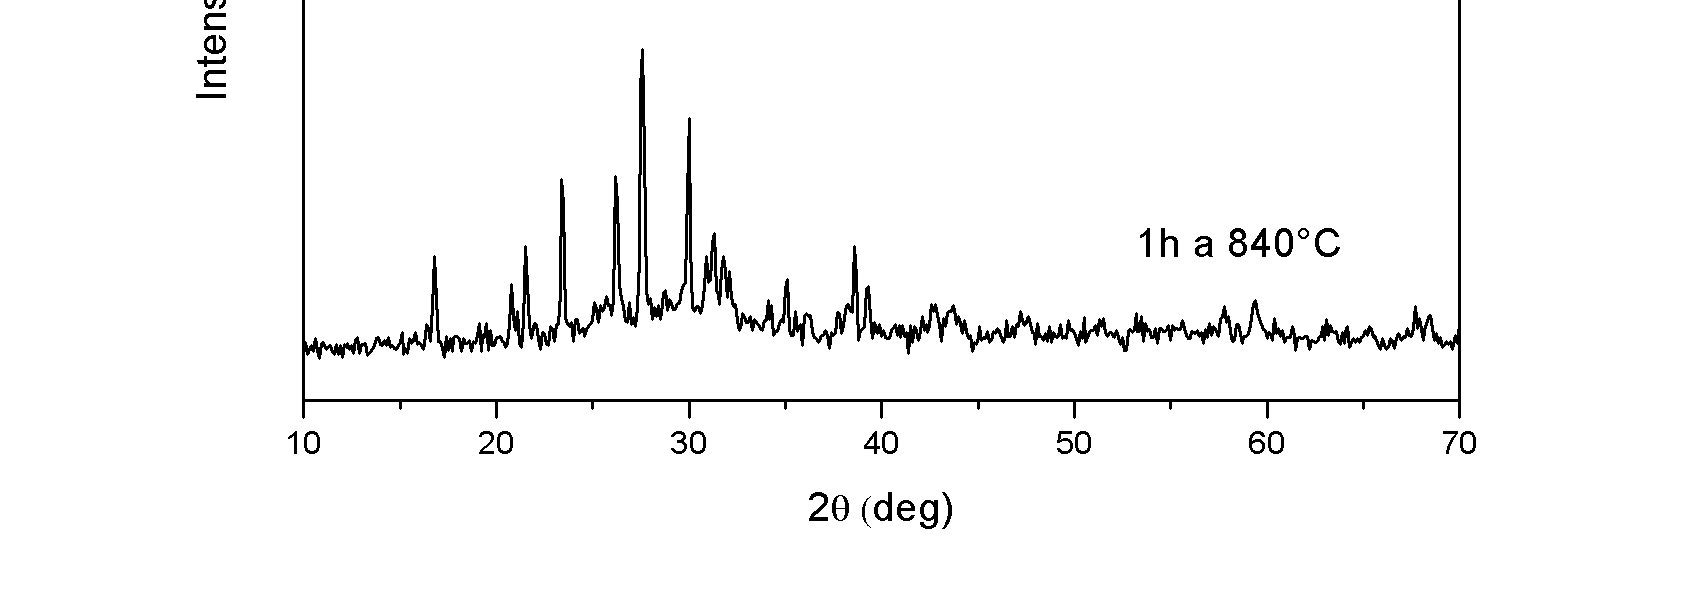 94 Capitolo 4 Figura 4.17: Difrattogramma ottenuto dall indagine XRD svolta sul campione trattato a 840 C per 1h.